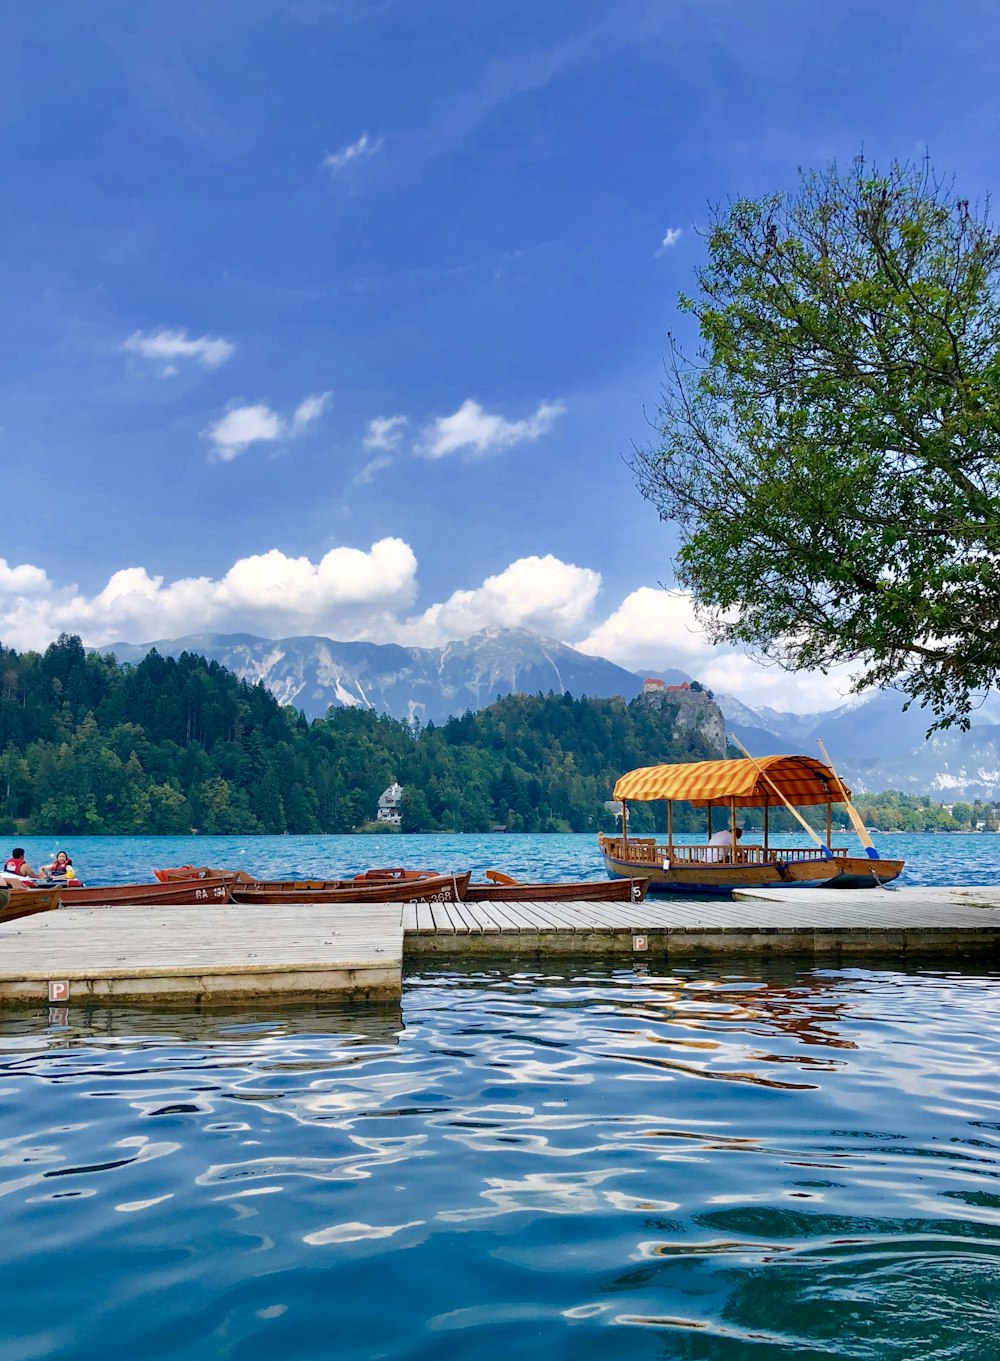 doca de madeira marrom no lago perto da montanha verde sob o céu azul e nuvens brancas durante o dia